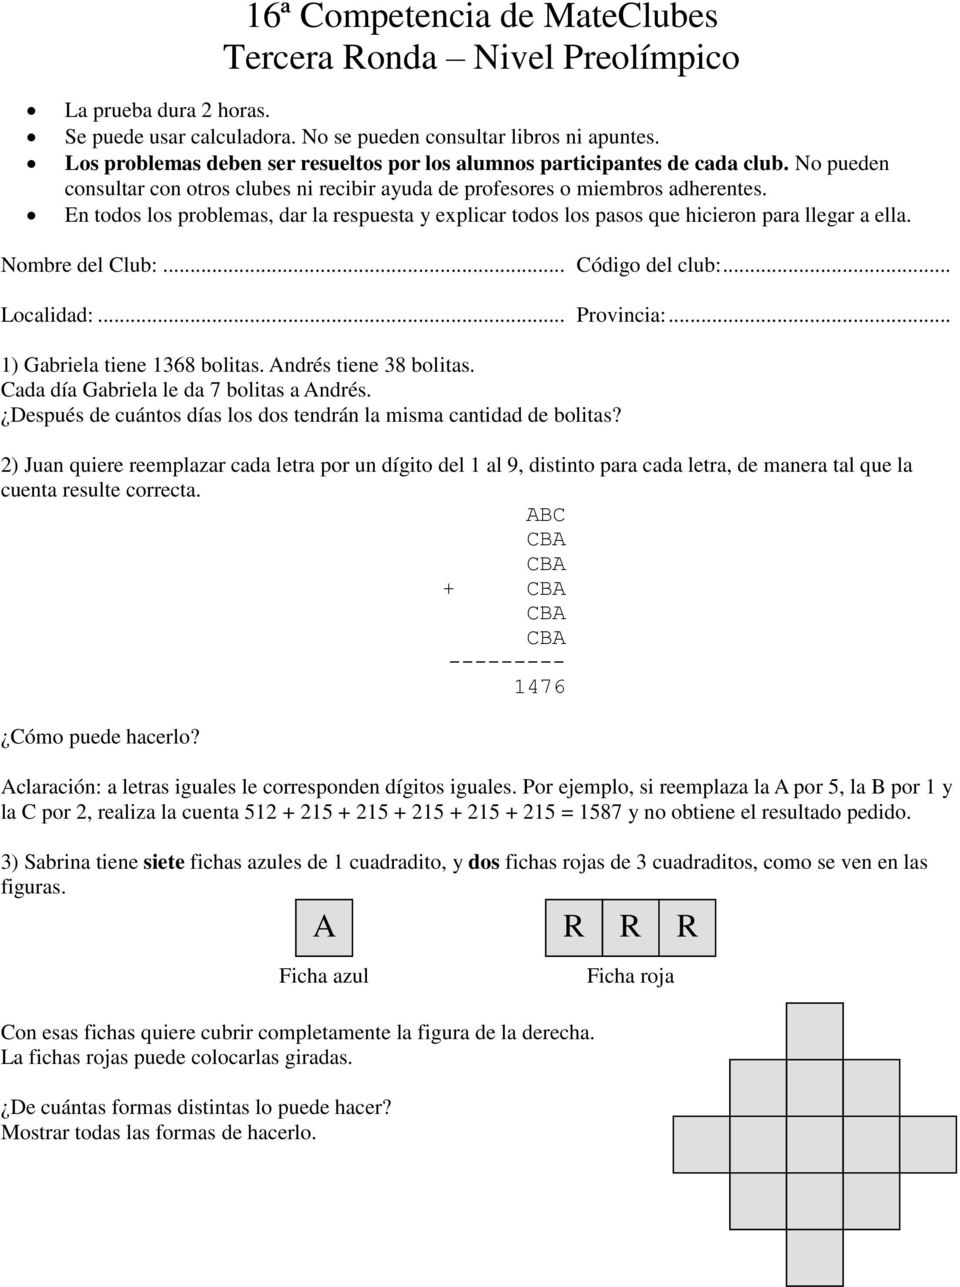 2) Juan quiere reemplazar cada letra por un dígito del 1 al 9, distinto para cada letra, de manera tal que la cuenta resulte correcta. ABC + --------- 1476 Cómo puede hacerlo?